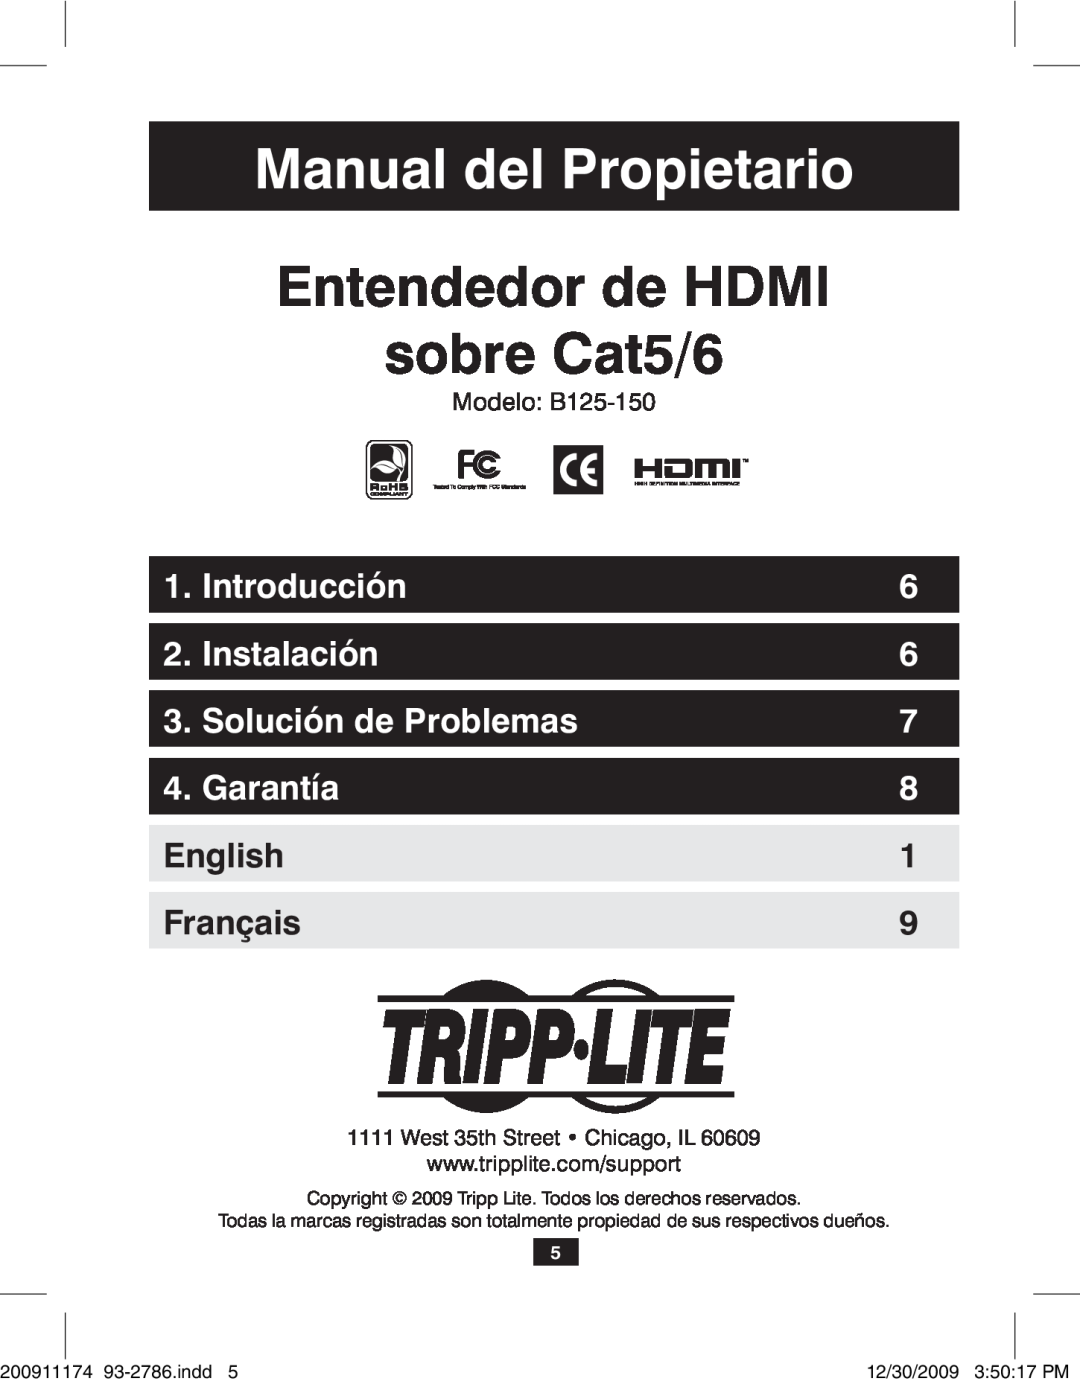 Tripp Lite B125-150 Manual del Propietario, Entendedor de HDMI sobre Cat5/6, Introducción, Instalación, Garantía, English 